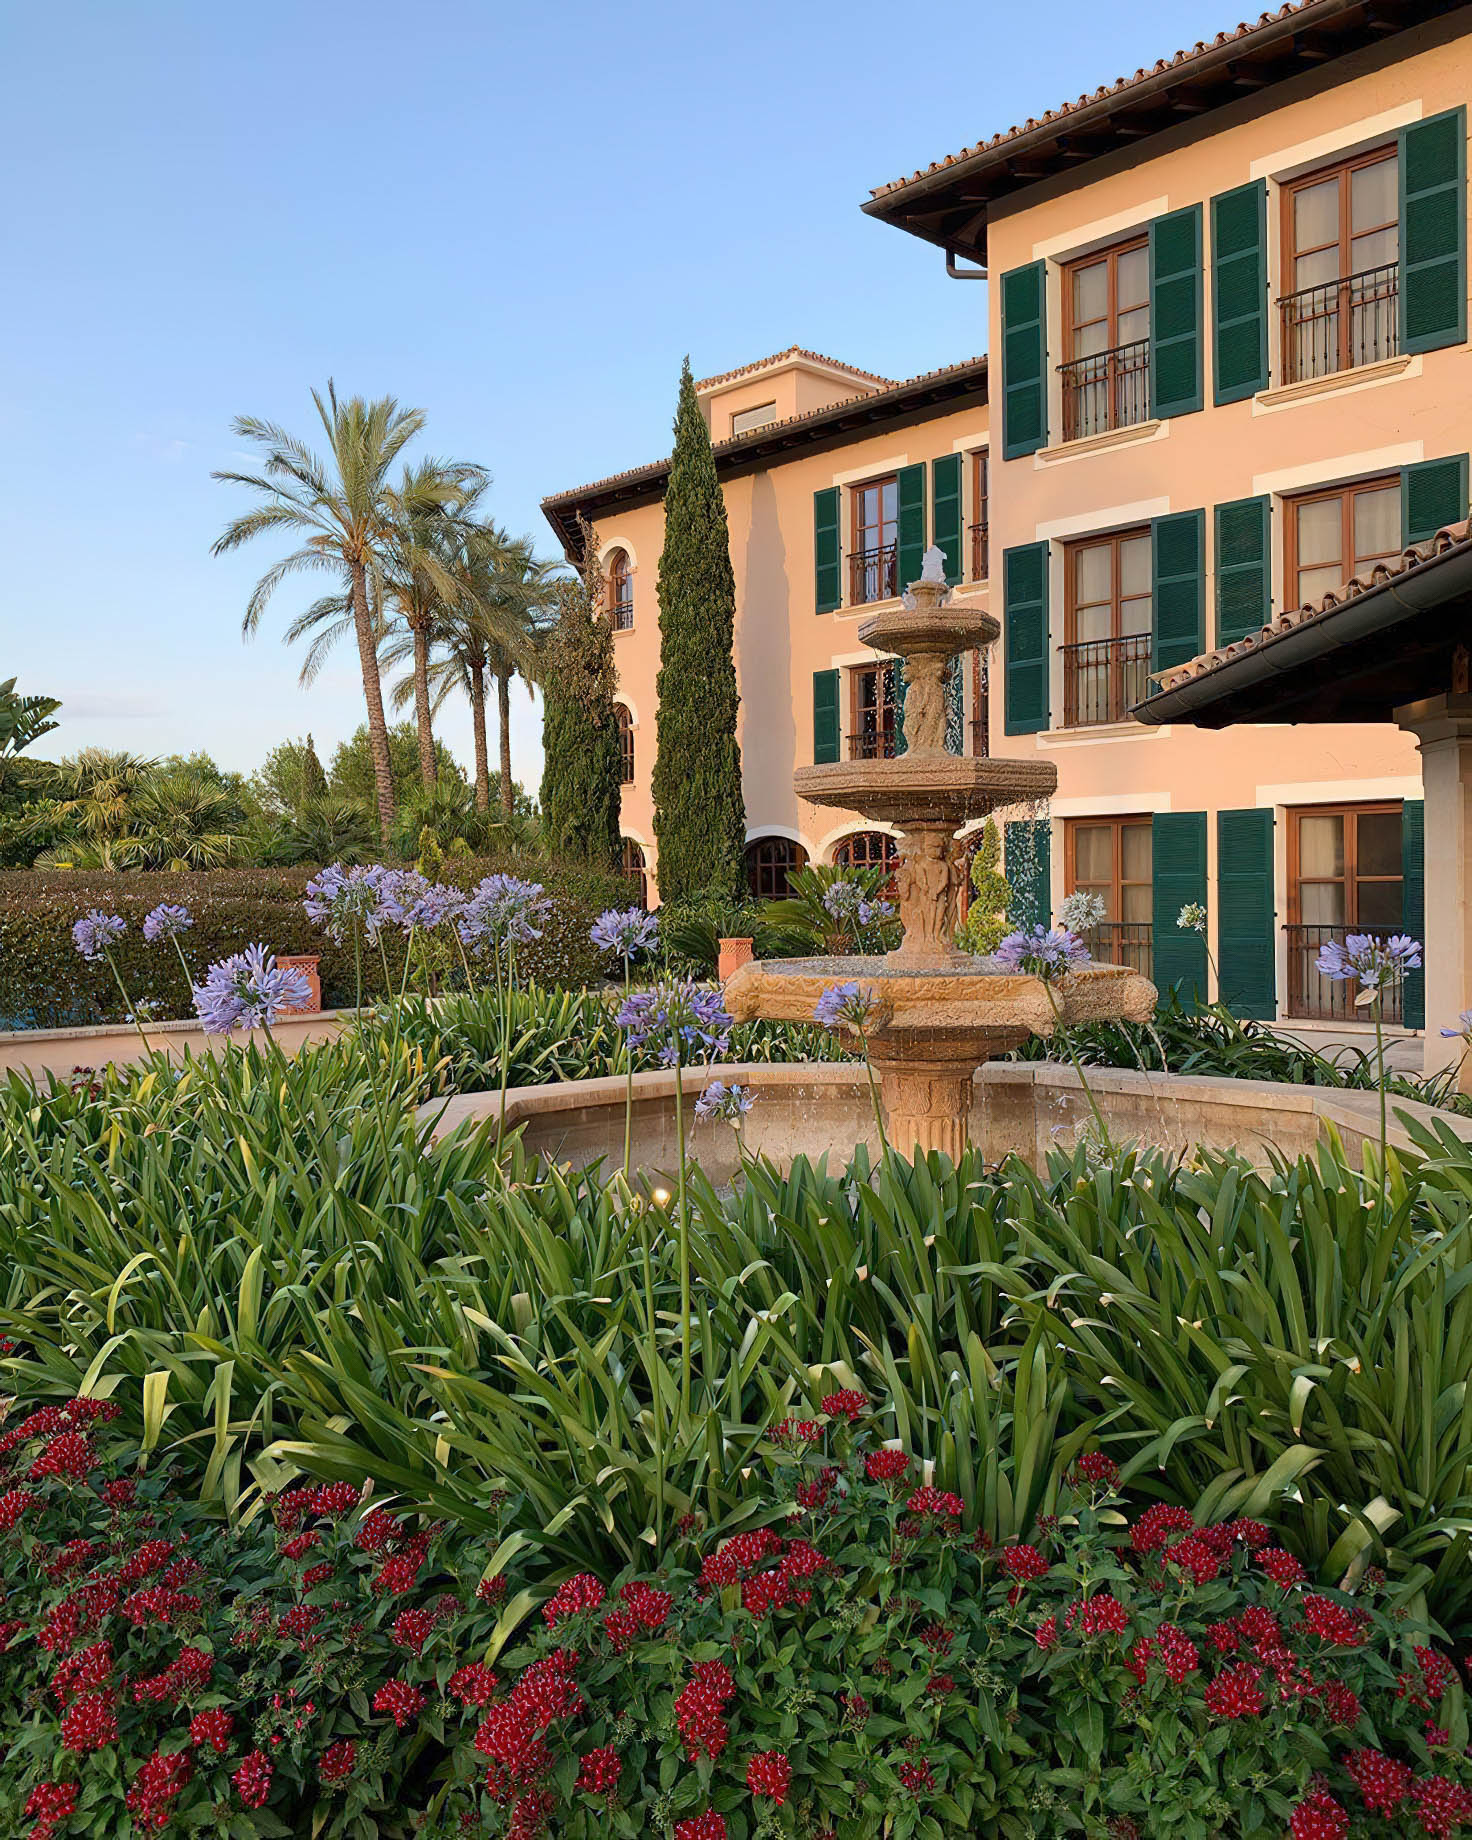 The St. Regis Mardavall Mallorca Resort - Palma de Mallorca, Spain - Outdoor Garden Fountain